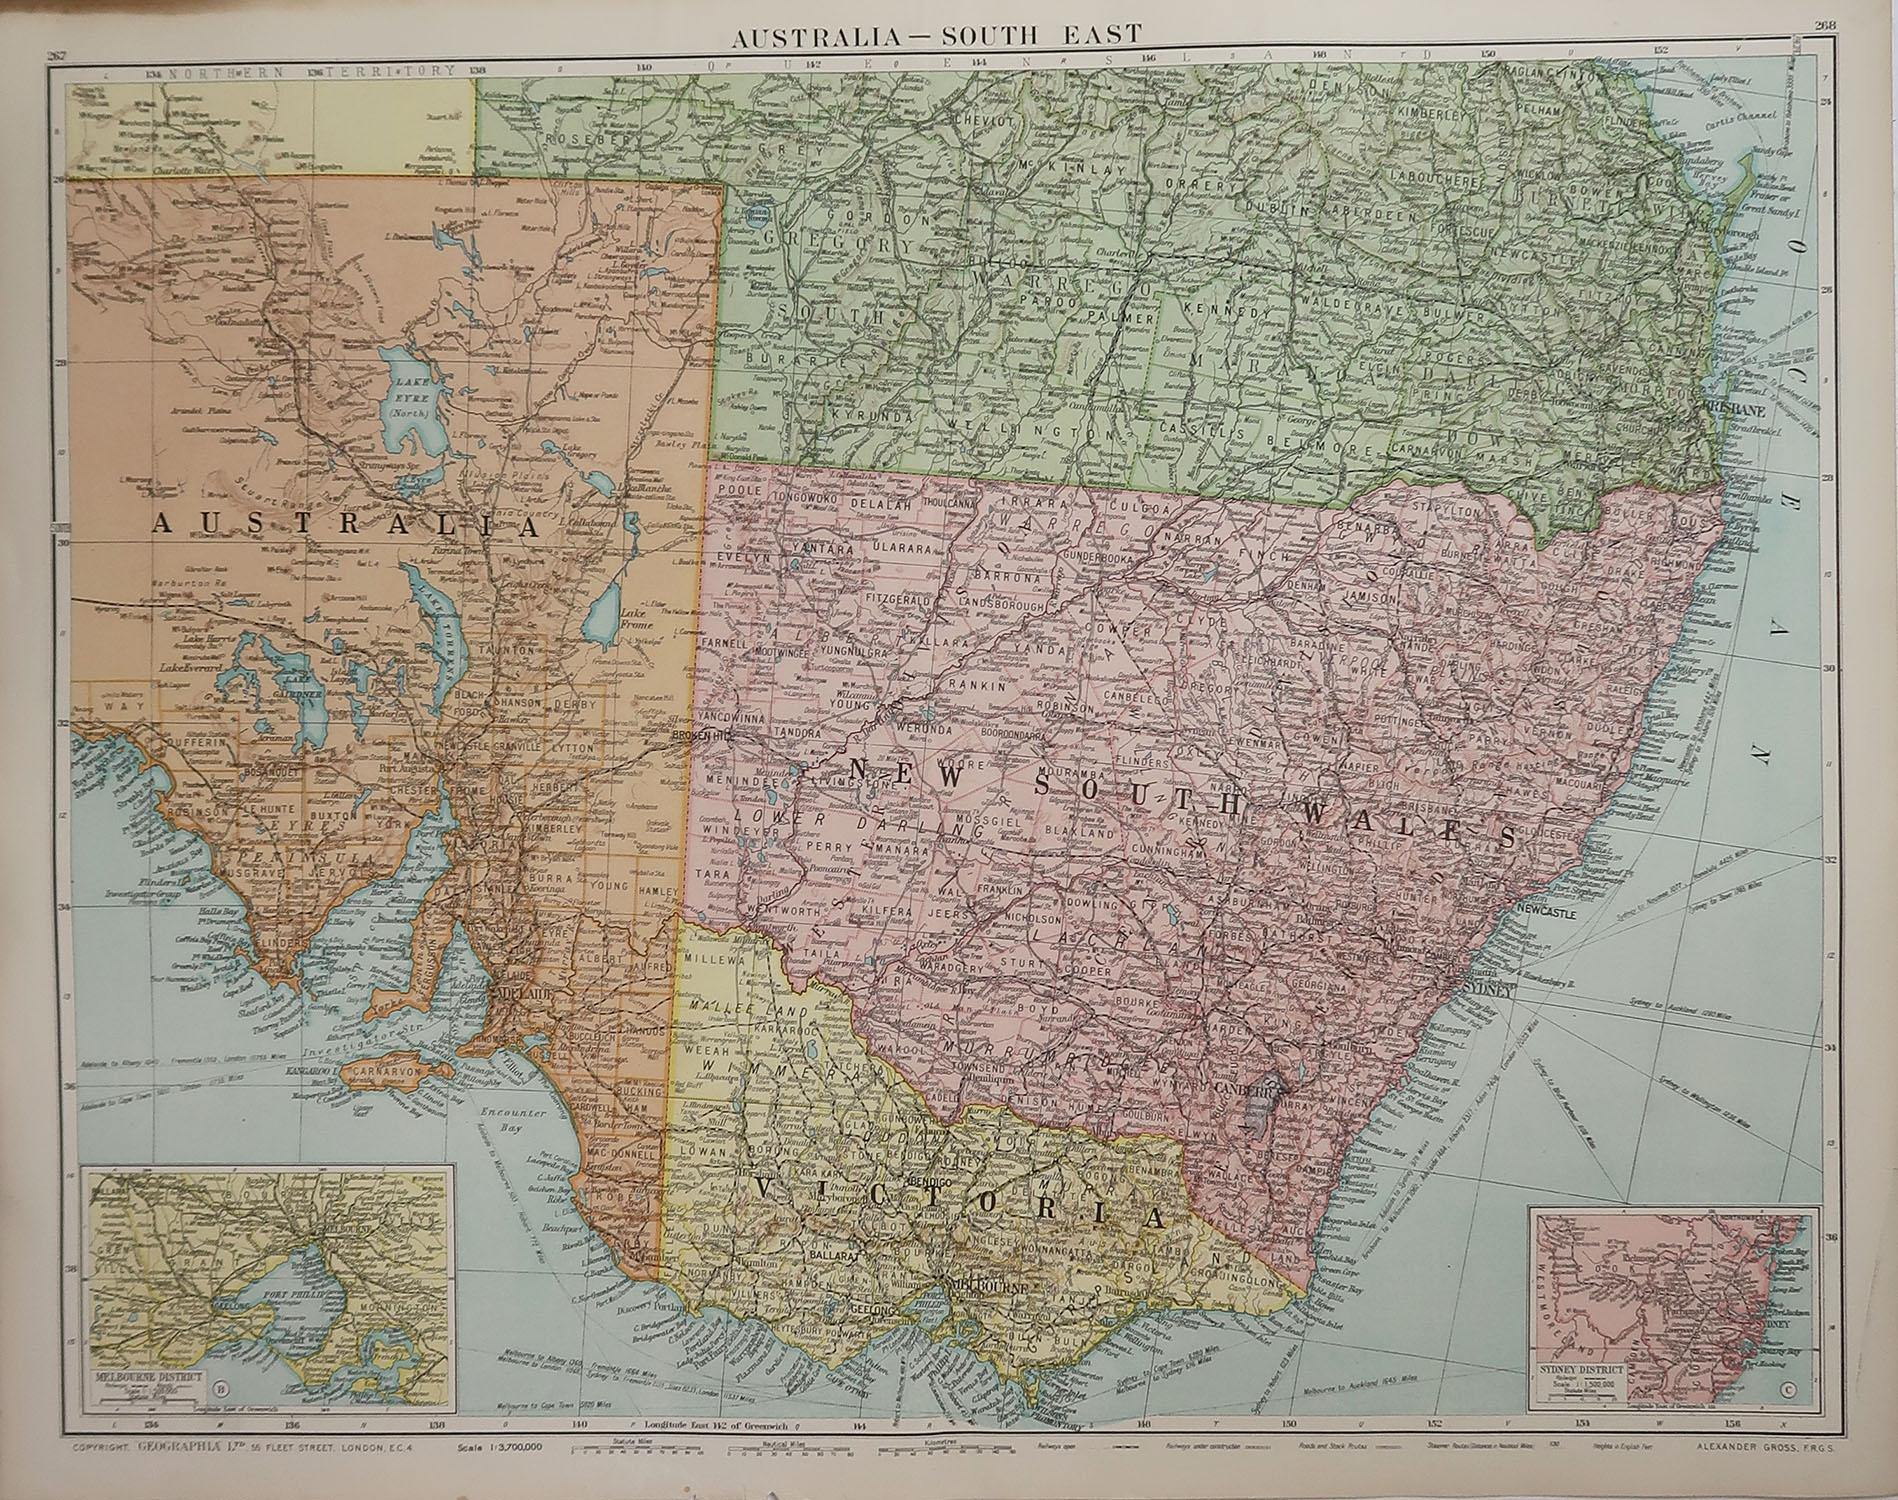 Grande carte de la Nouvelle-Galles du Sud

Couleur originale. 

Bon état 

Publié par Alexander Gross

Non encadré.








 